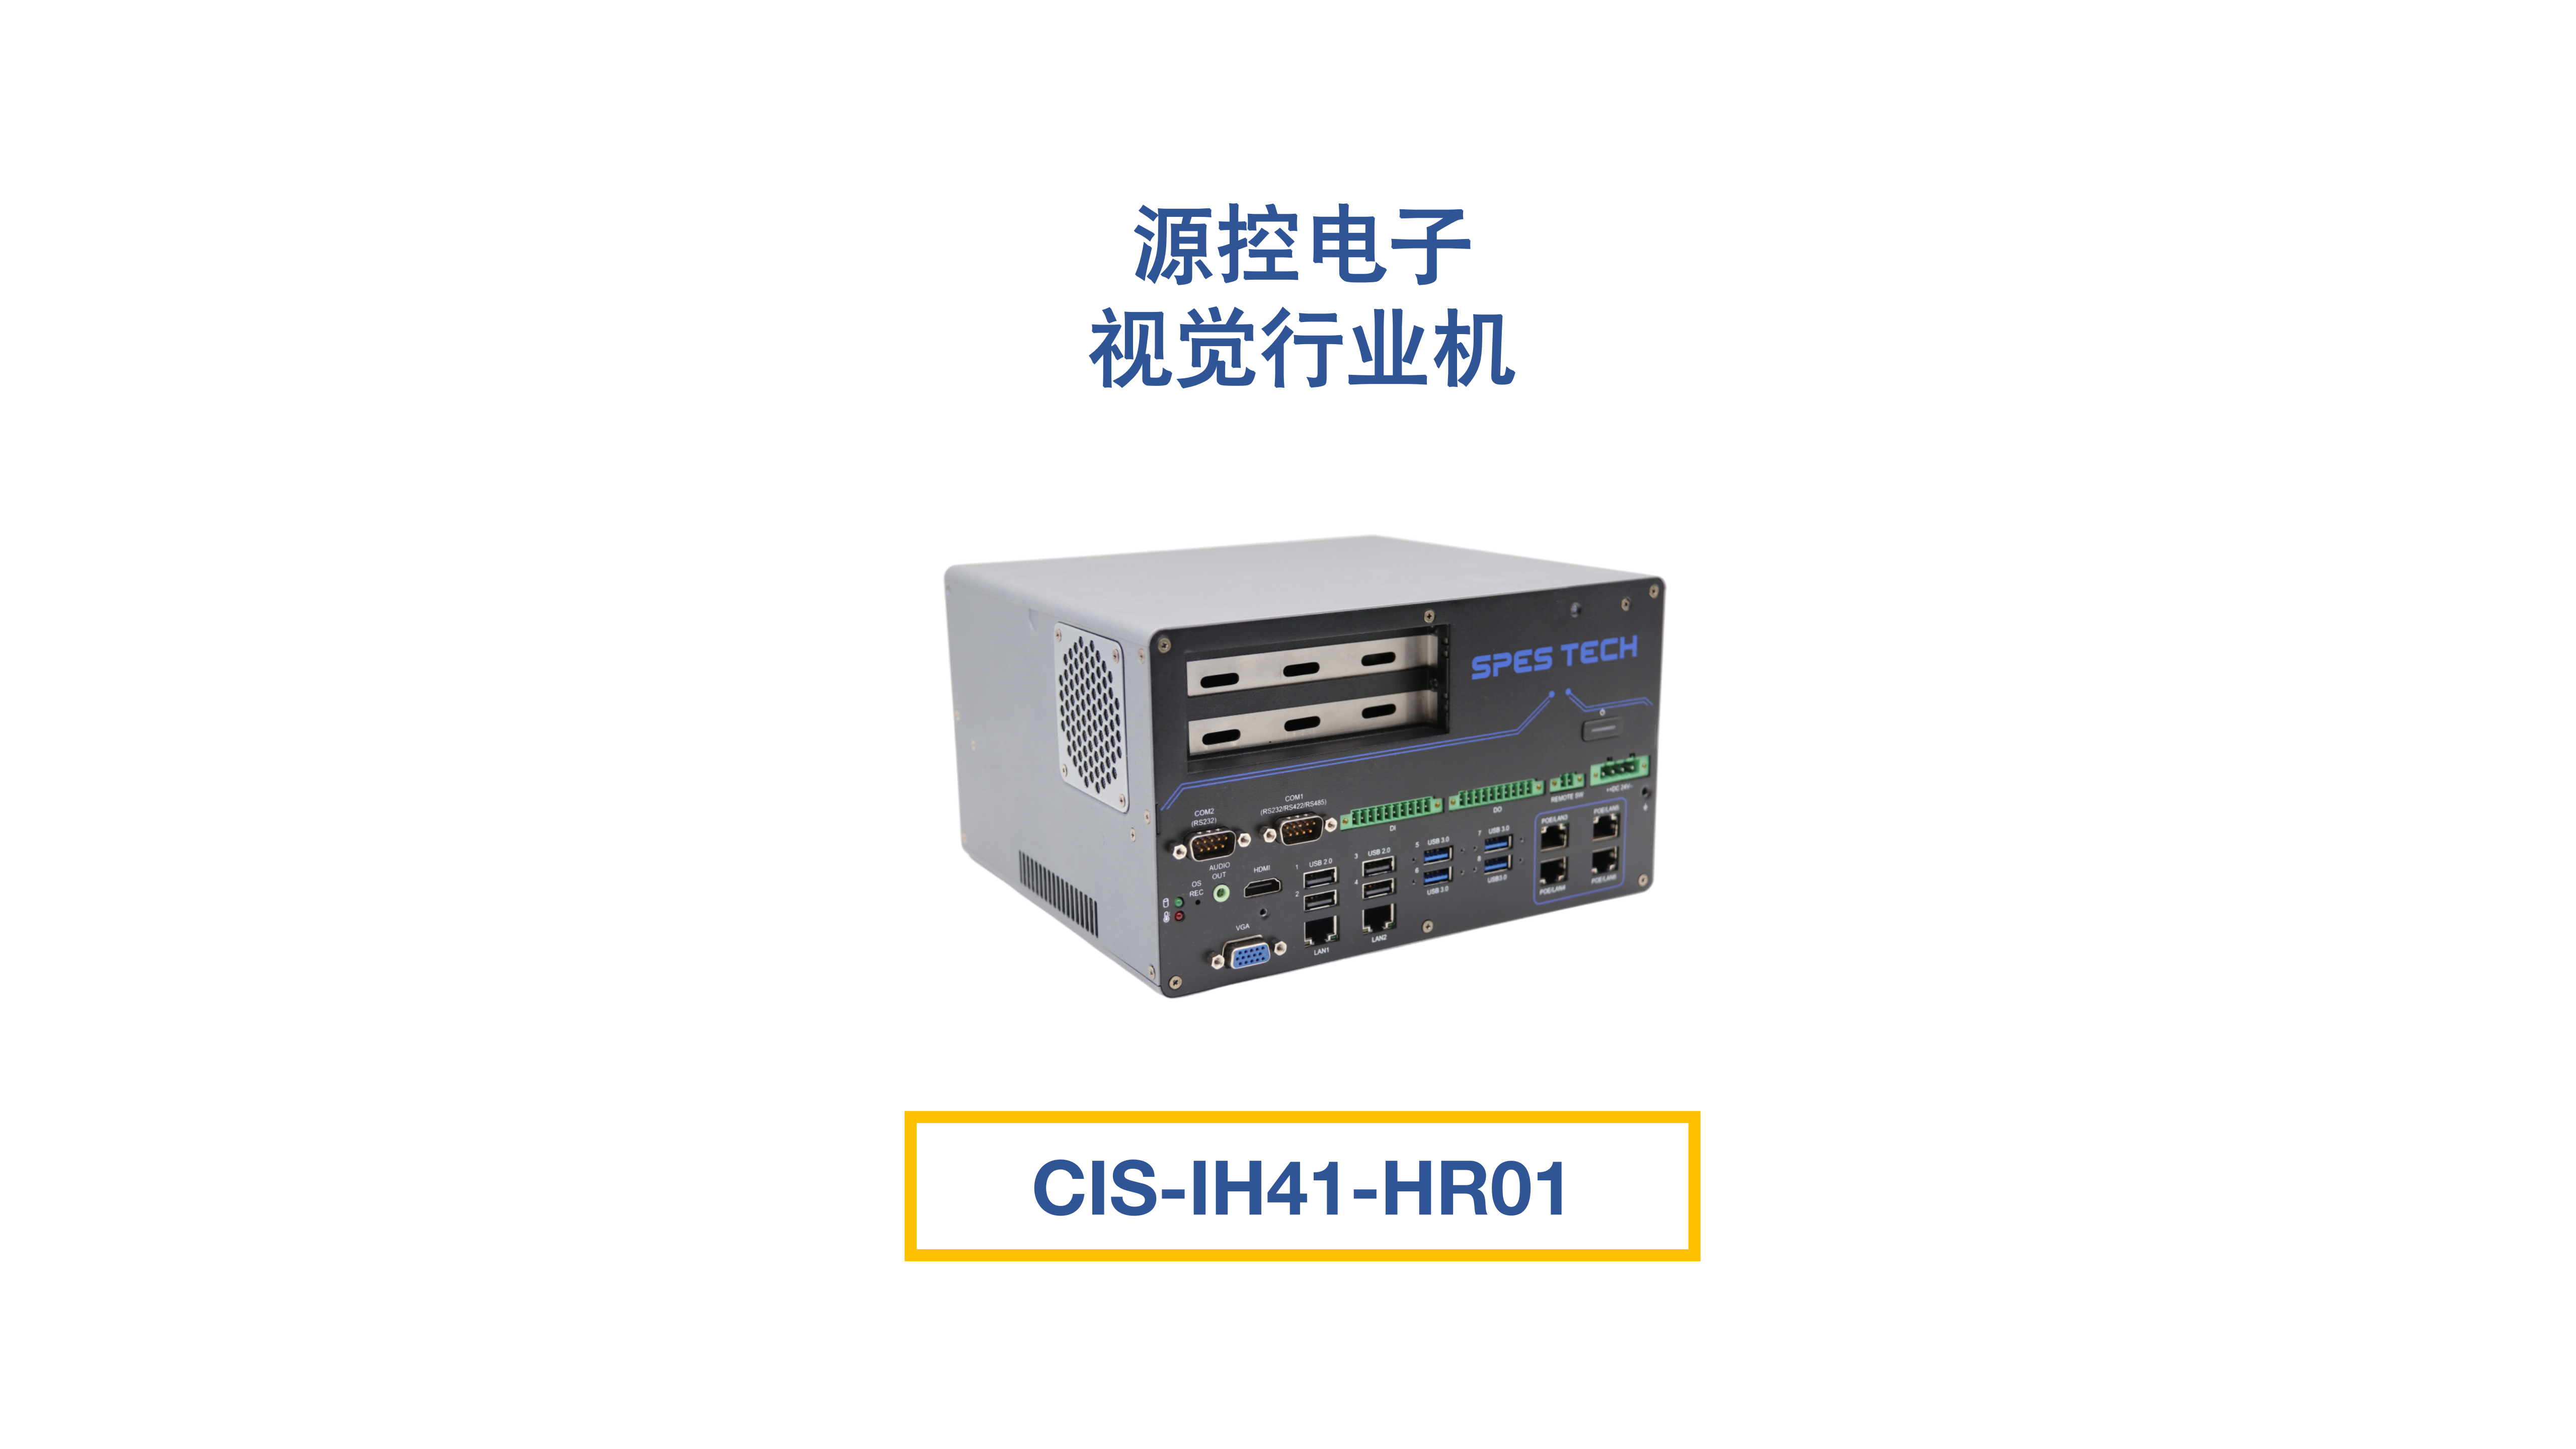 源控CIS-IH41-HR01视觉行业专用机